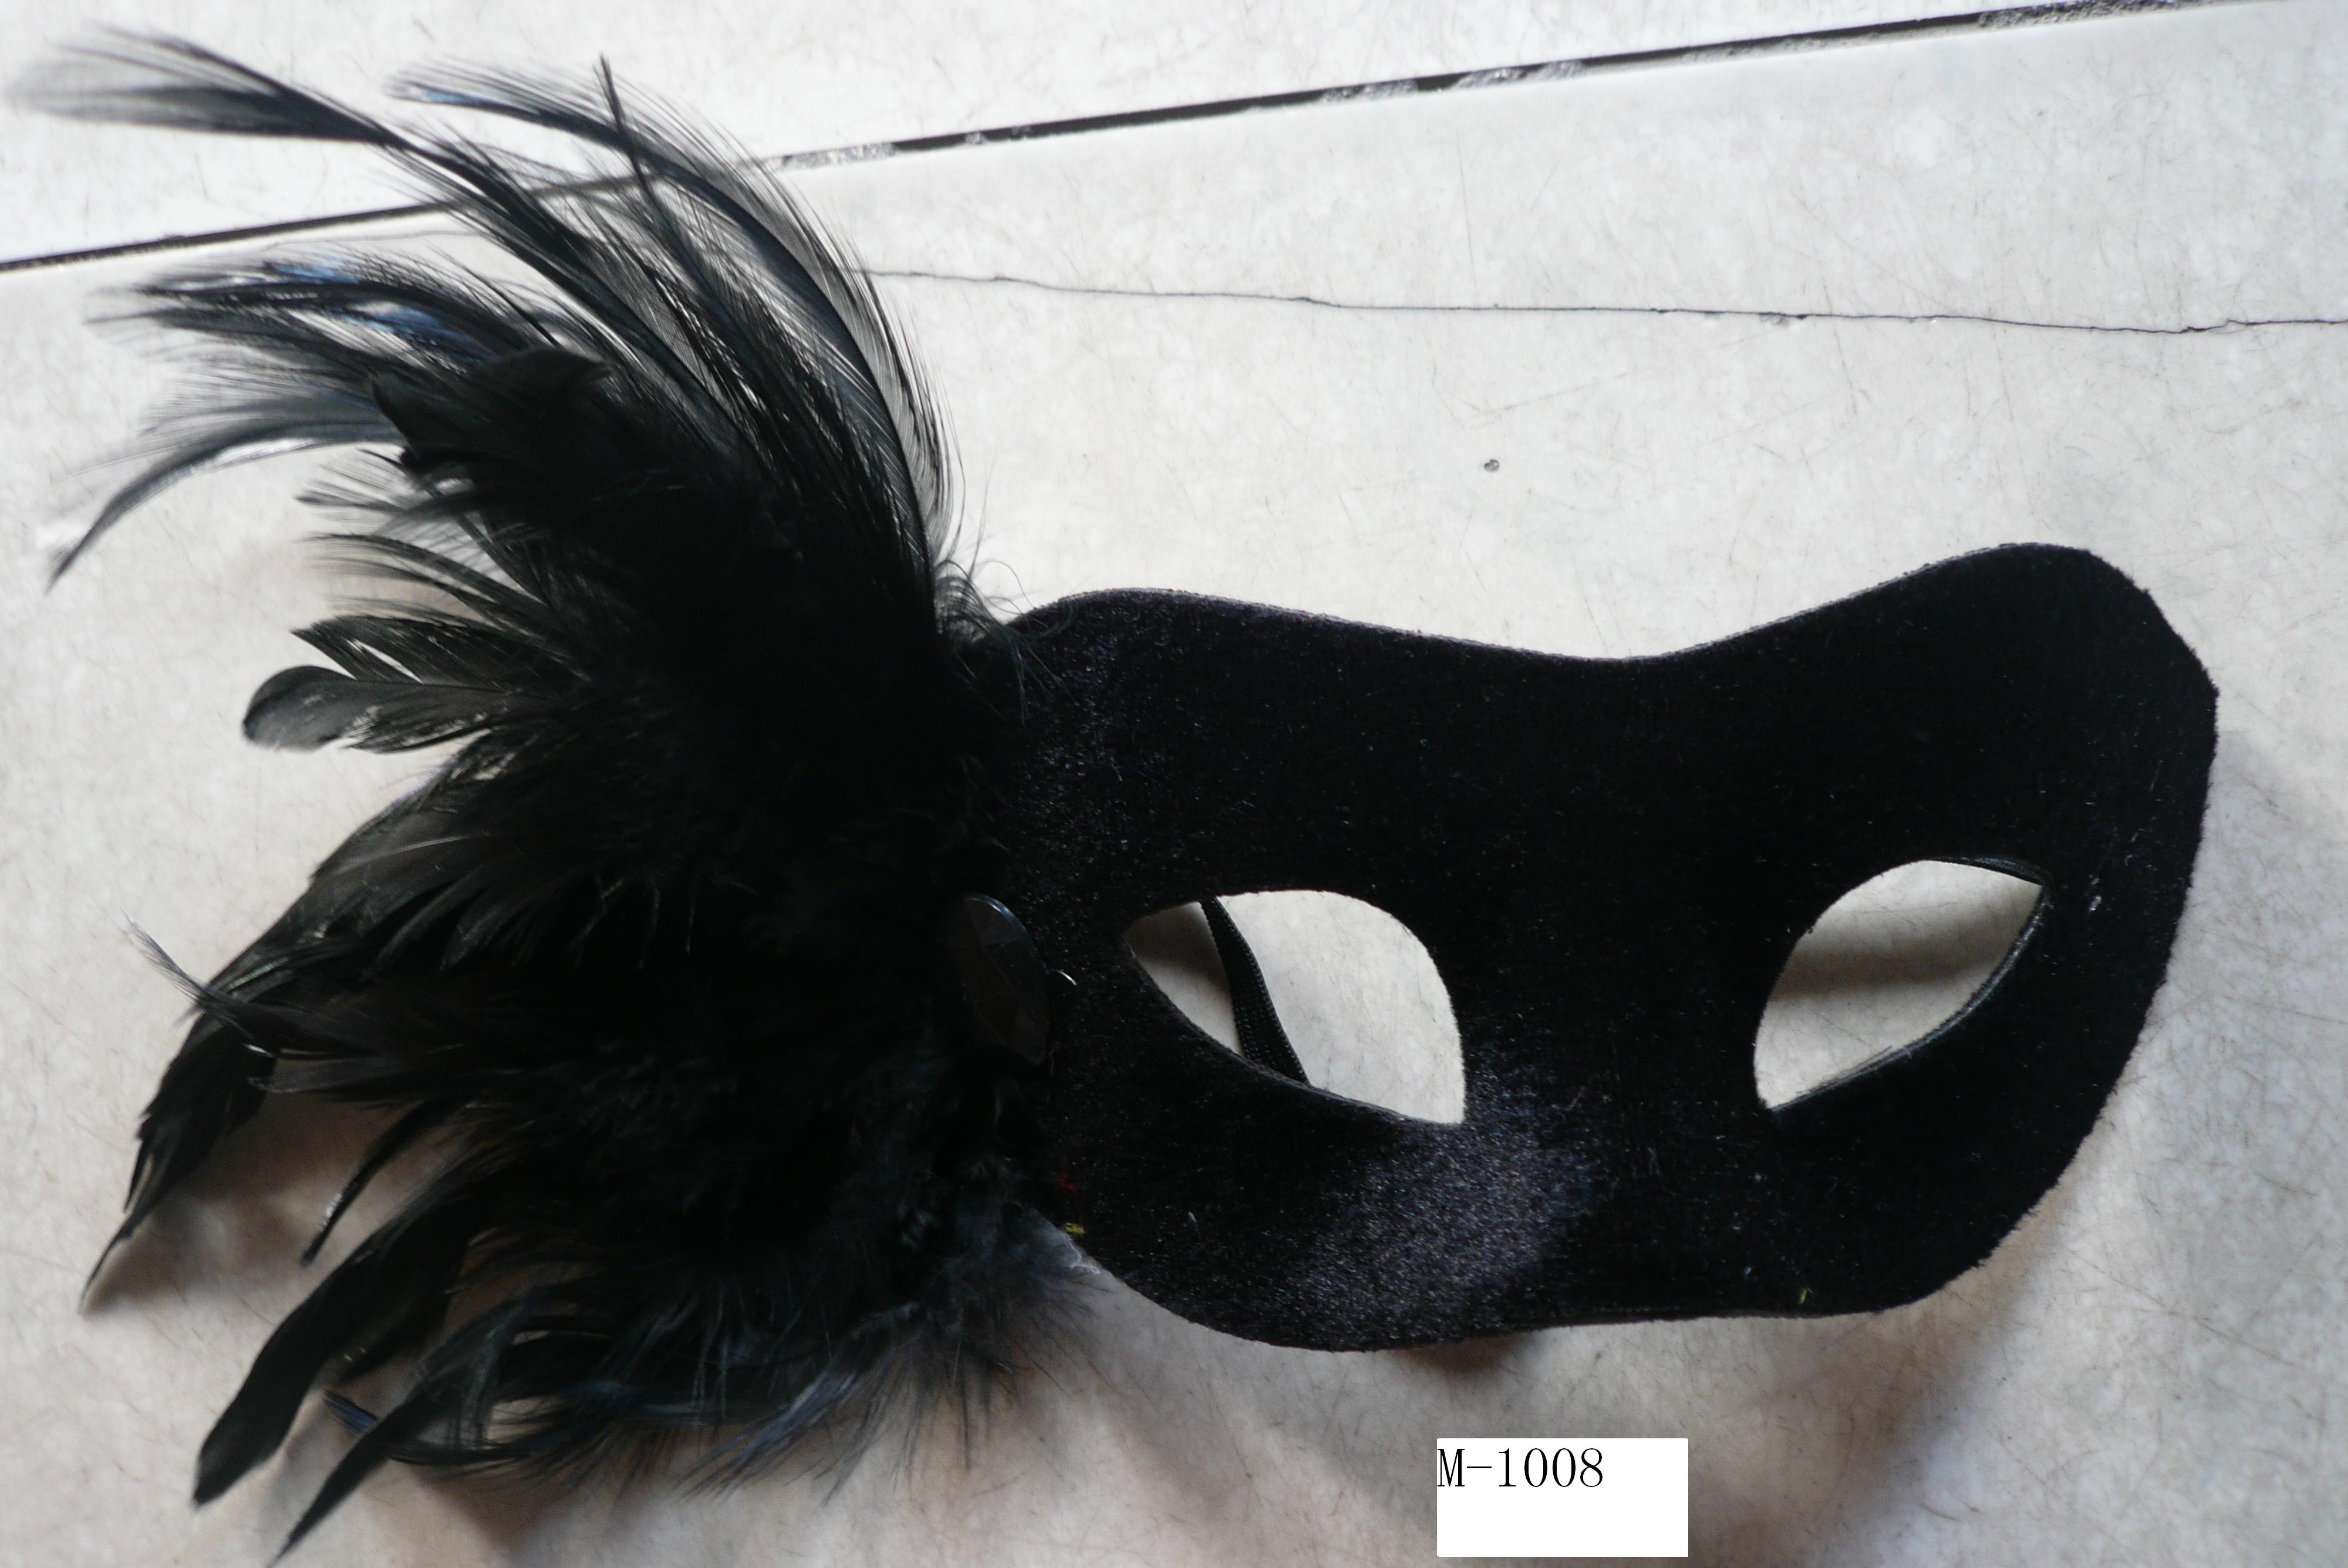  Дешевые маски из перьев для продажи - Сделано в Китае M-1008